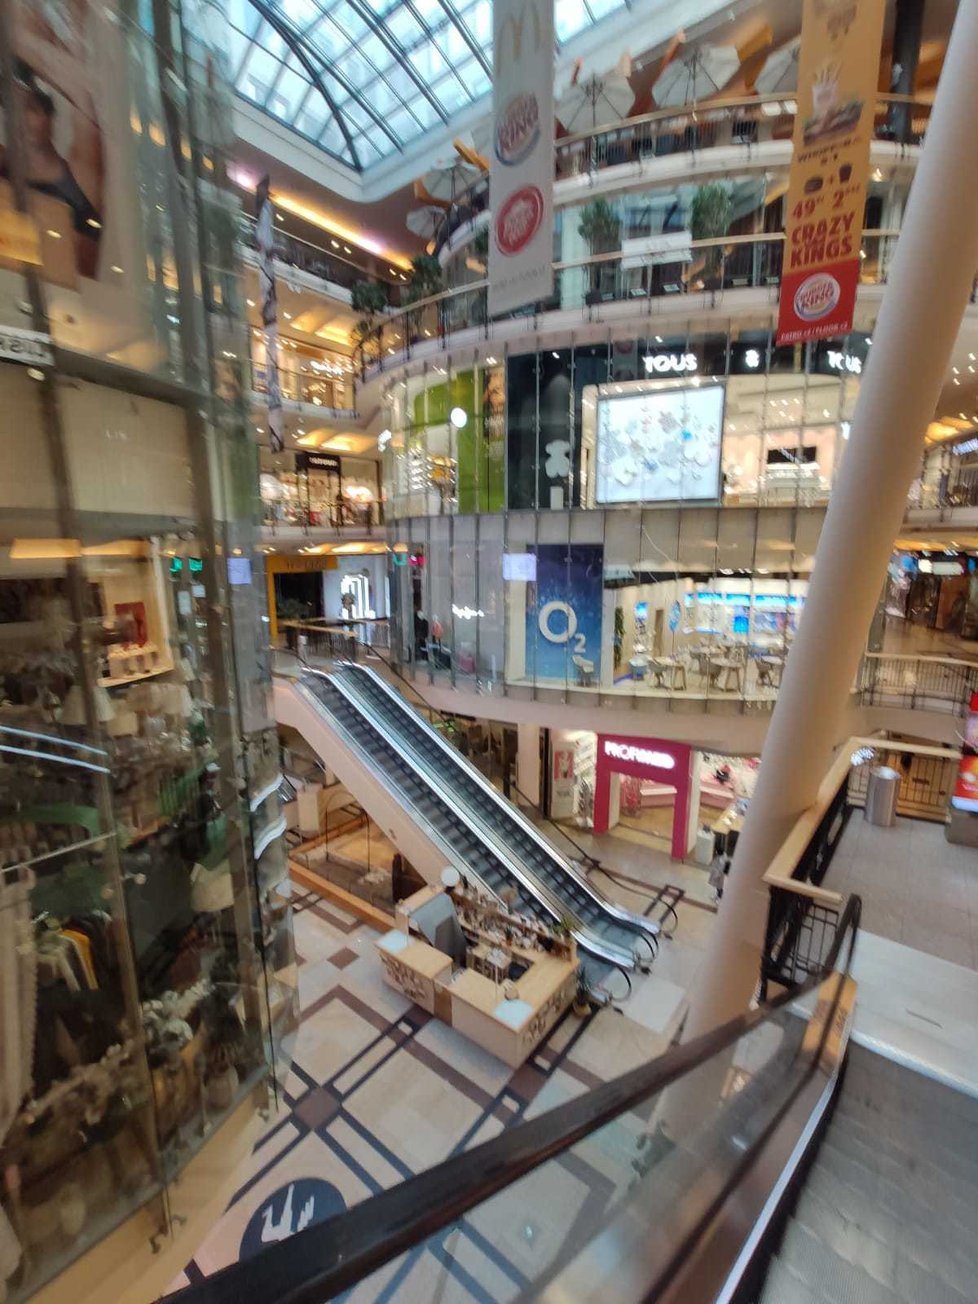 Obchodní centrum Palladium v centru Prahy zeje prázdnotou. Většina obchodů je zavřených.